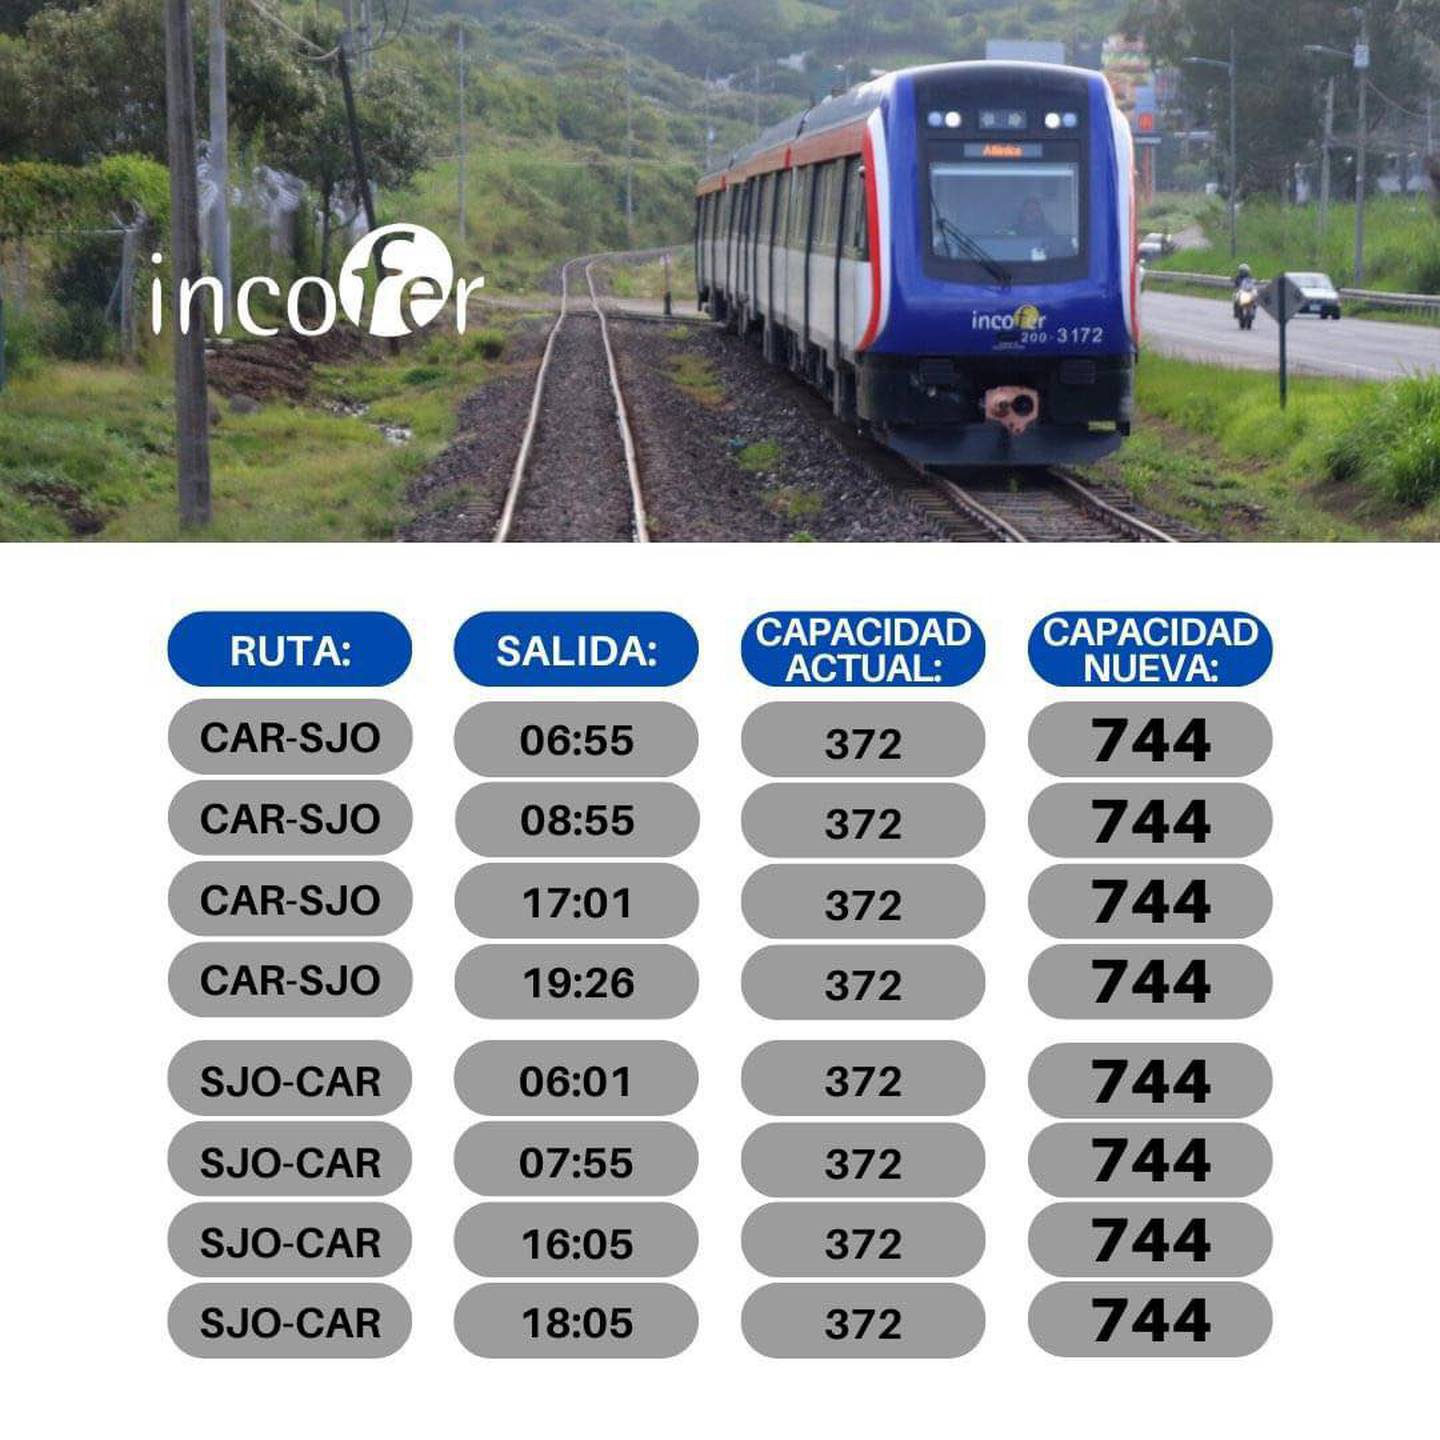 Amplia capacidad de trenes ruta Cartago - San José.